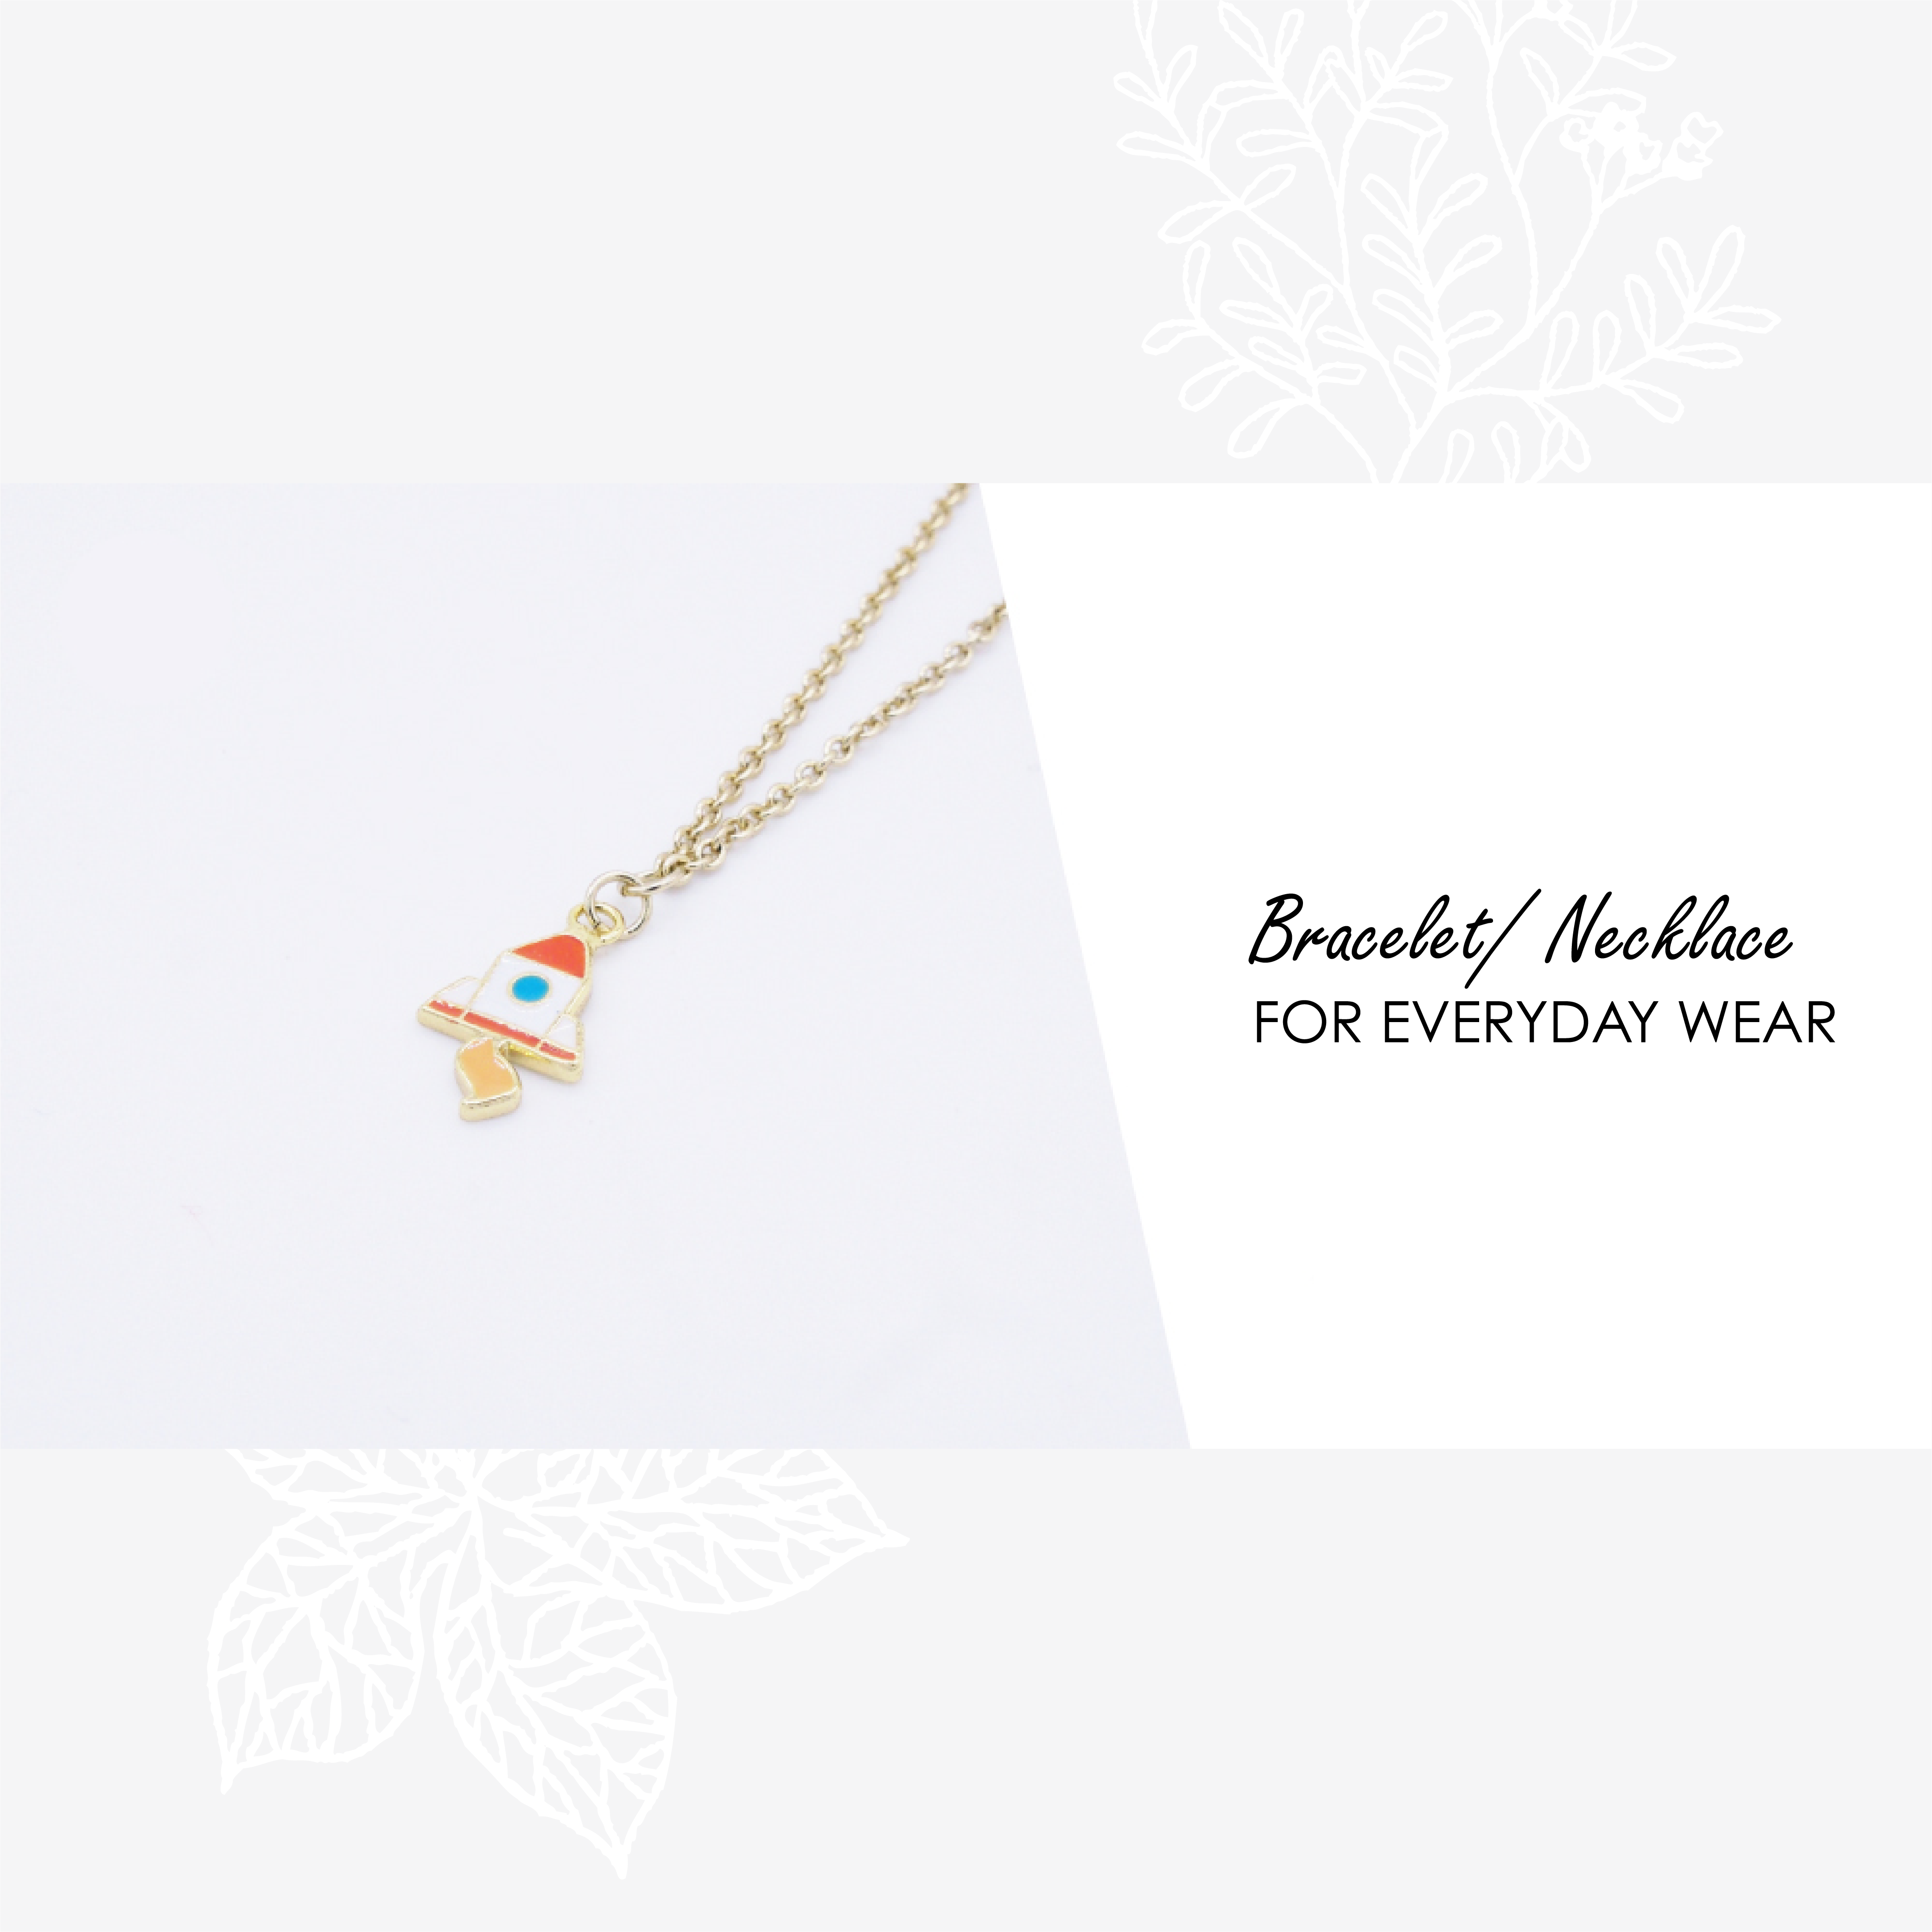 Boba Kitty Enamel Earrings/ Bracelet/ Necklace